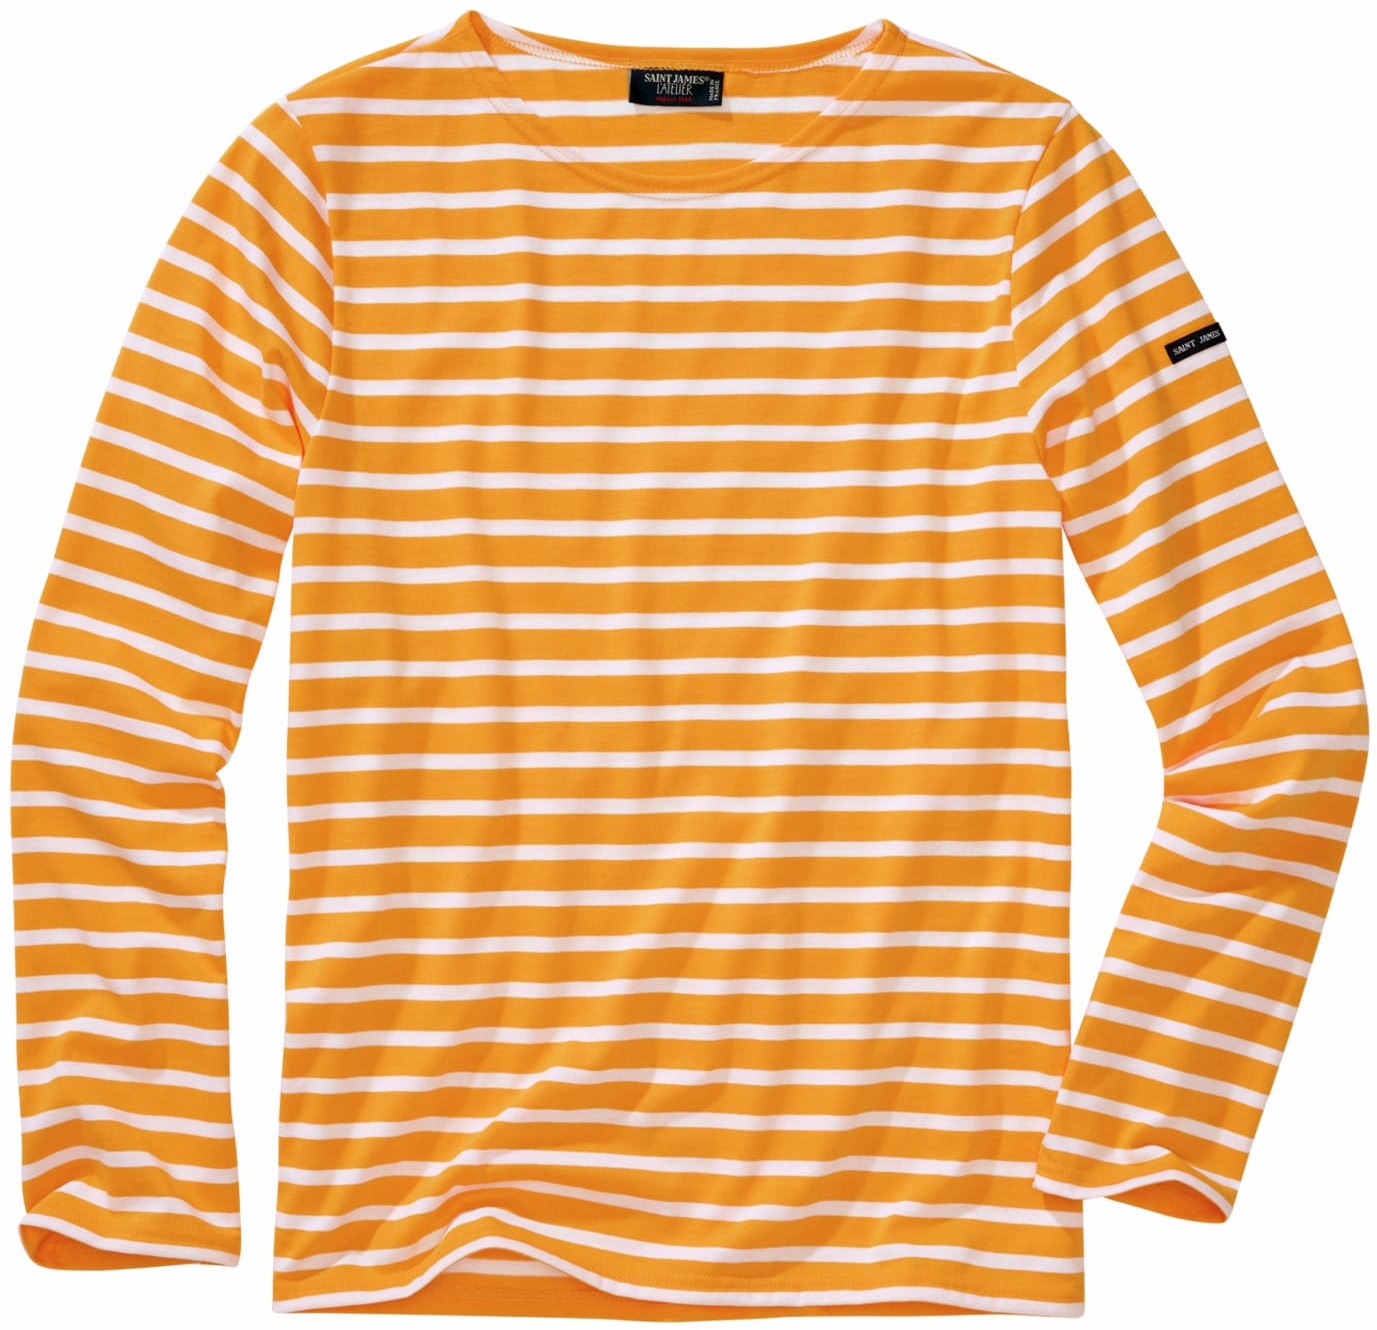 Saint James Herren Bretagne-Shirt orange XL - XL